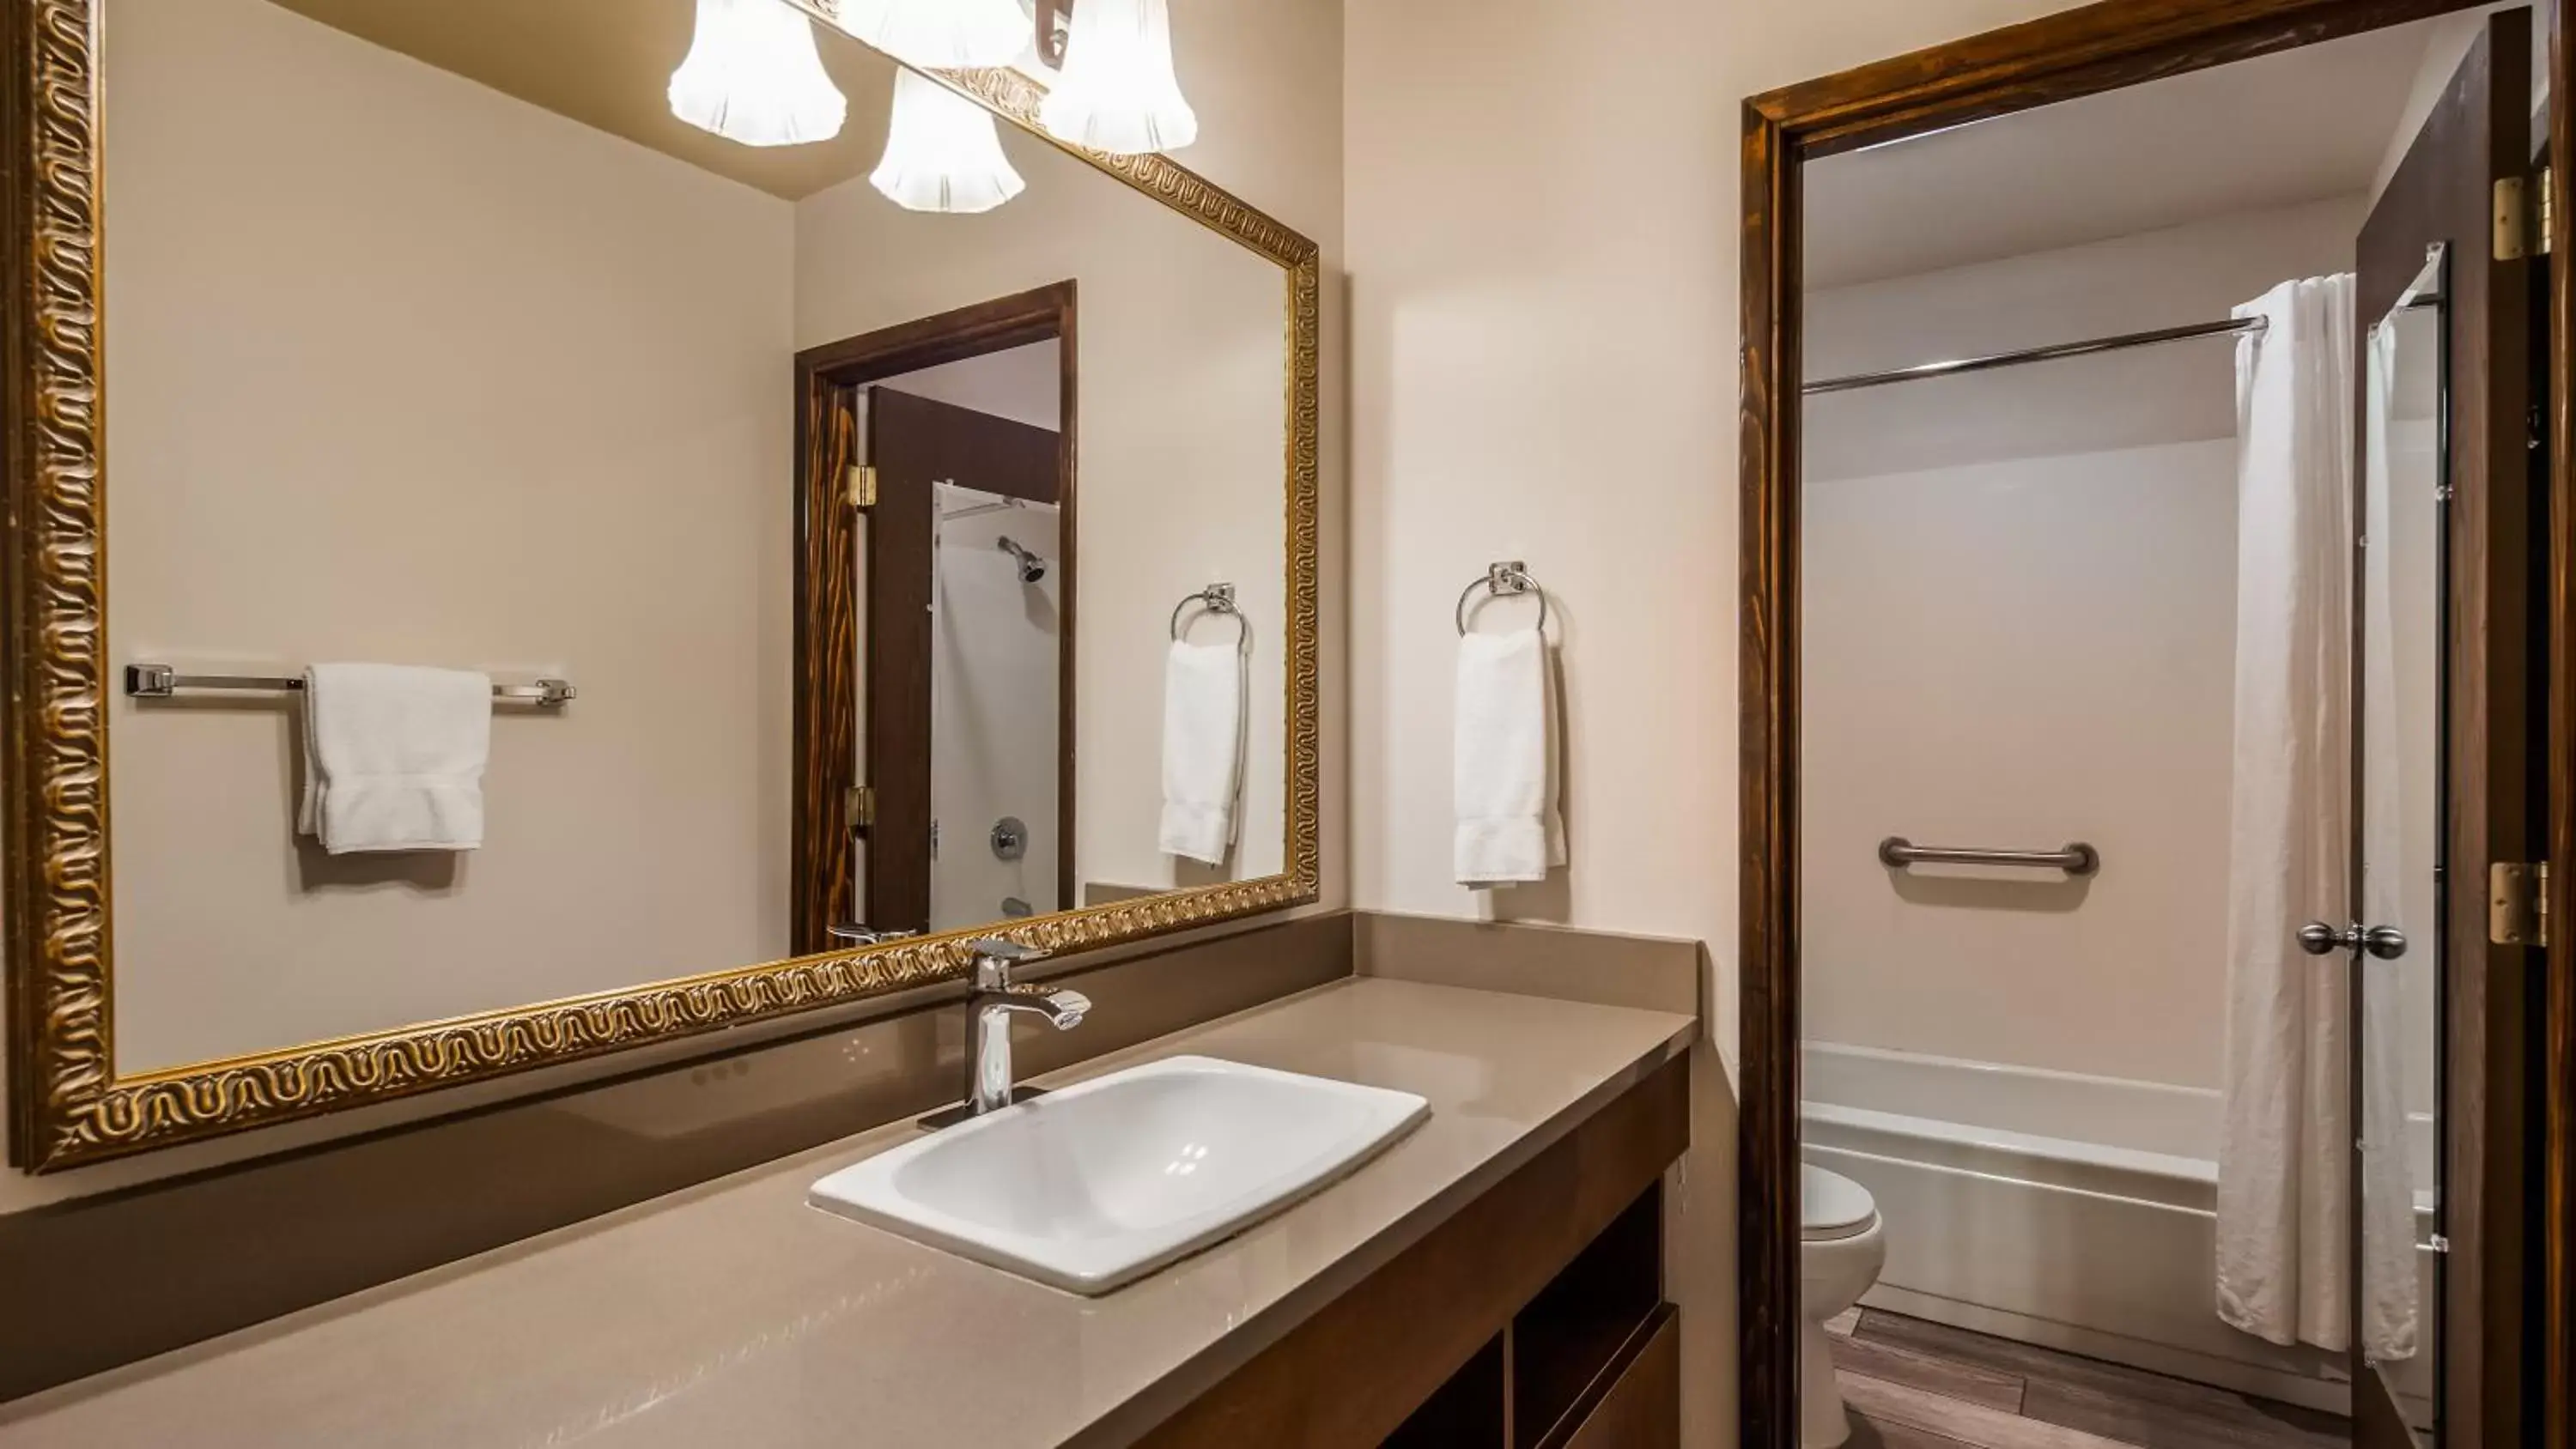 Bathroom in Best Western Salbasgeon Inn & Suites